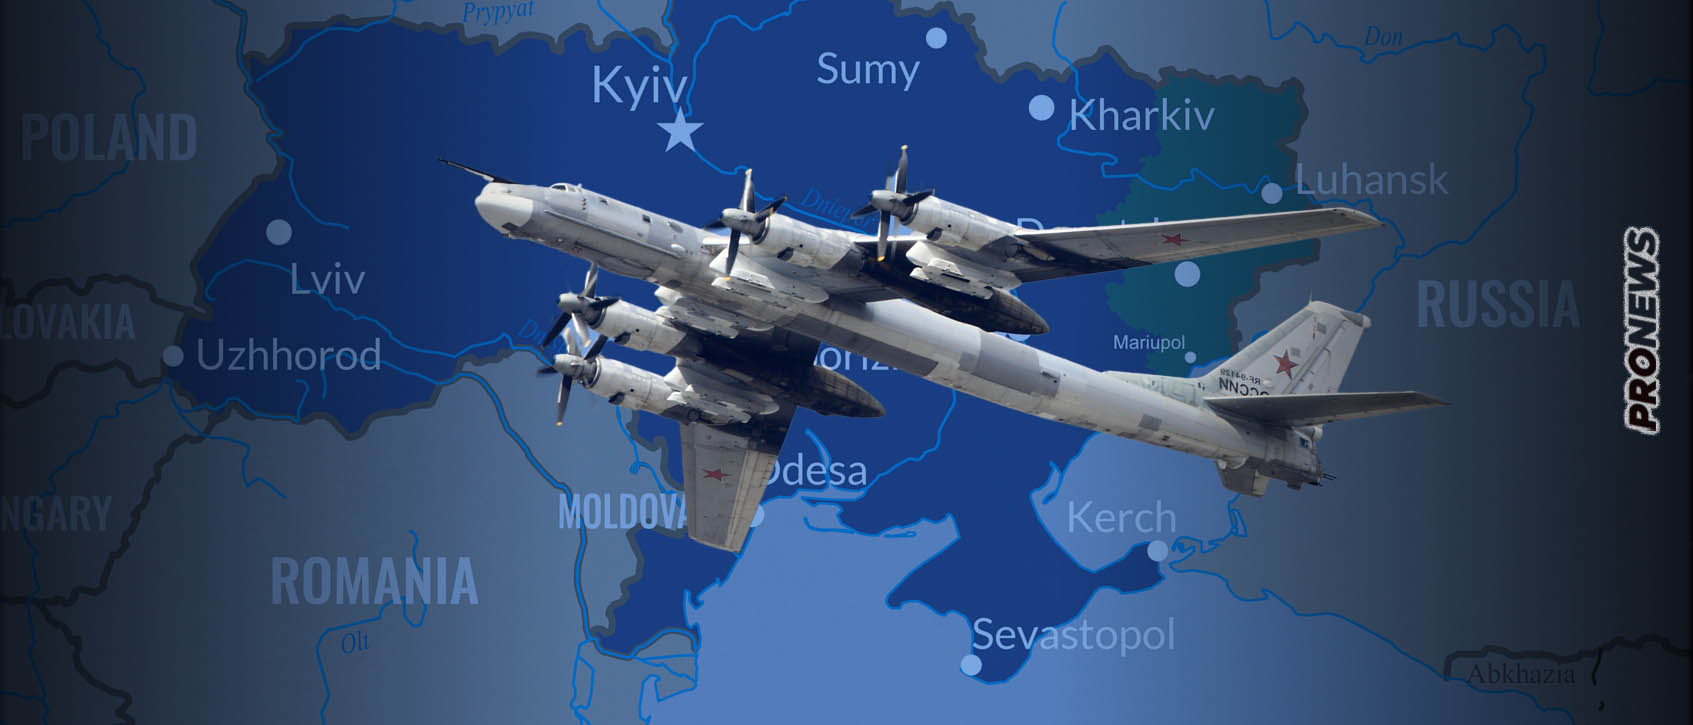 Απογειώθηκαν ρωσικά στρατηγικά βομβαρδιστικά με βλήματα cruise και κατευθύνονται προς ουκρανικούς στόχους